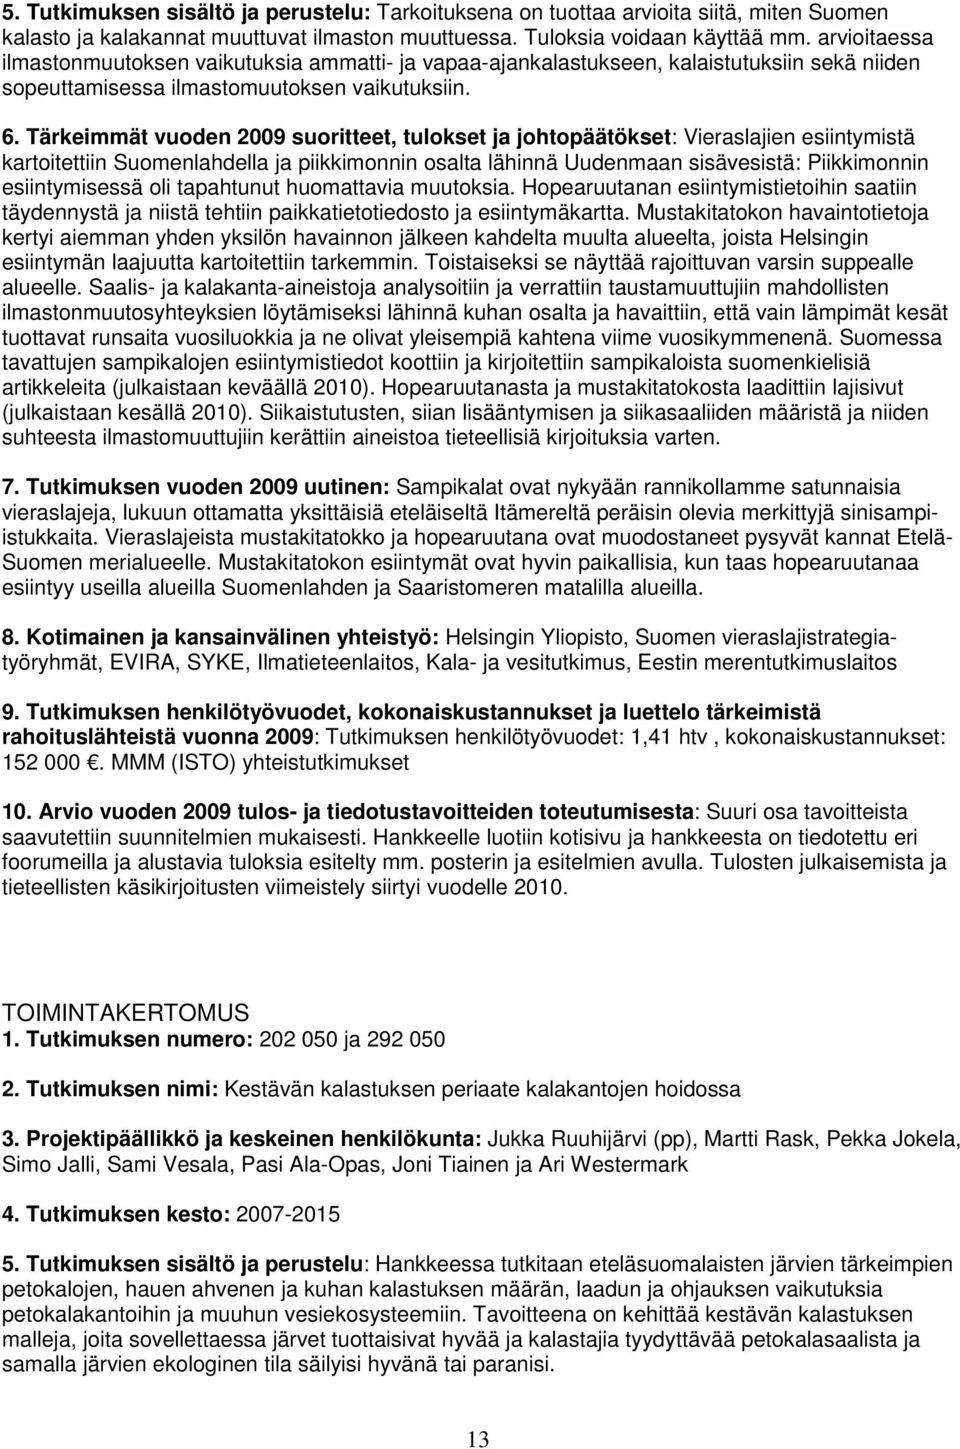 Tärkeimmät vuoden 2009 suoritteet, tulokset ja johtopäätökset: Vieraslajien esiintymistä kartoitettiin Suomenlahdella ja piikkimonnin osalta lähinnä Uudenmaan sisävesistä: Piikkimonnin esiintymisessä